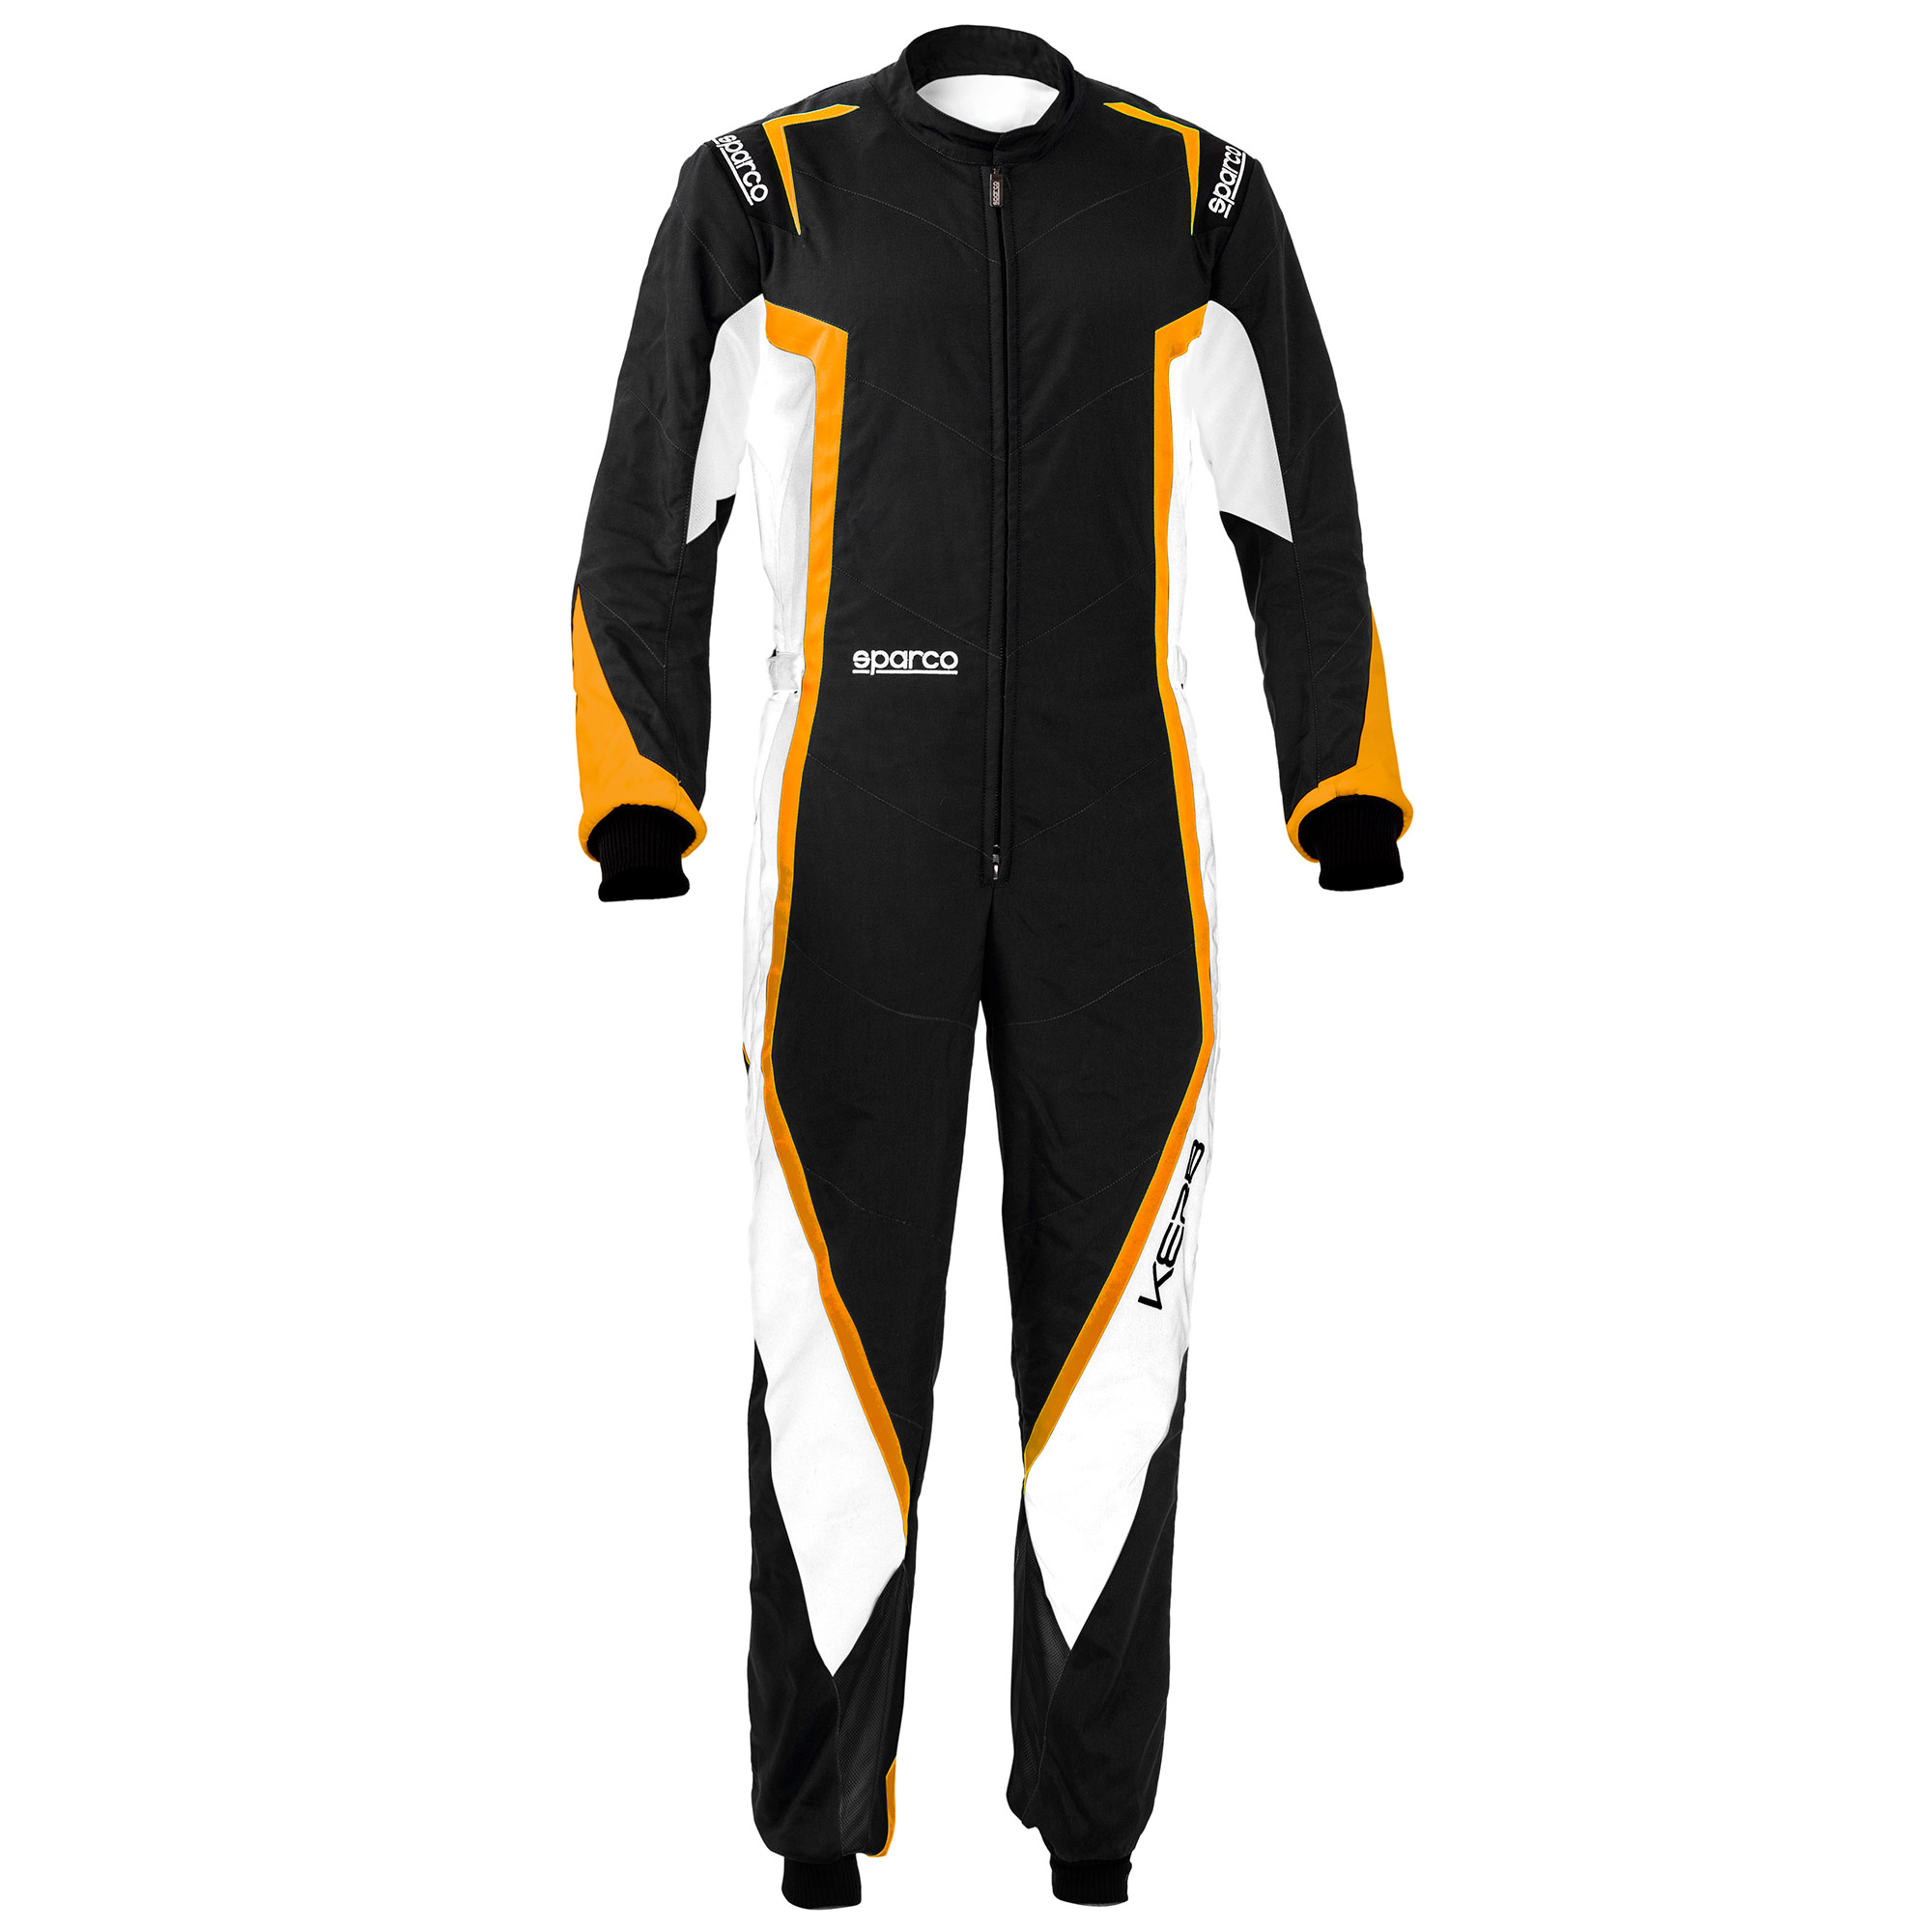 GO Kart Race Suit CIK FIA level 2 Approved Kart Racing Suit Race Karting Suit 